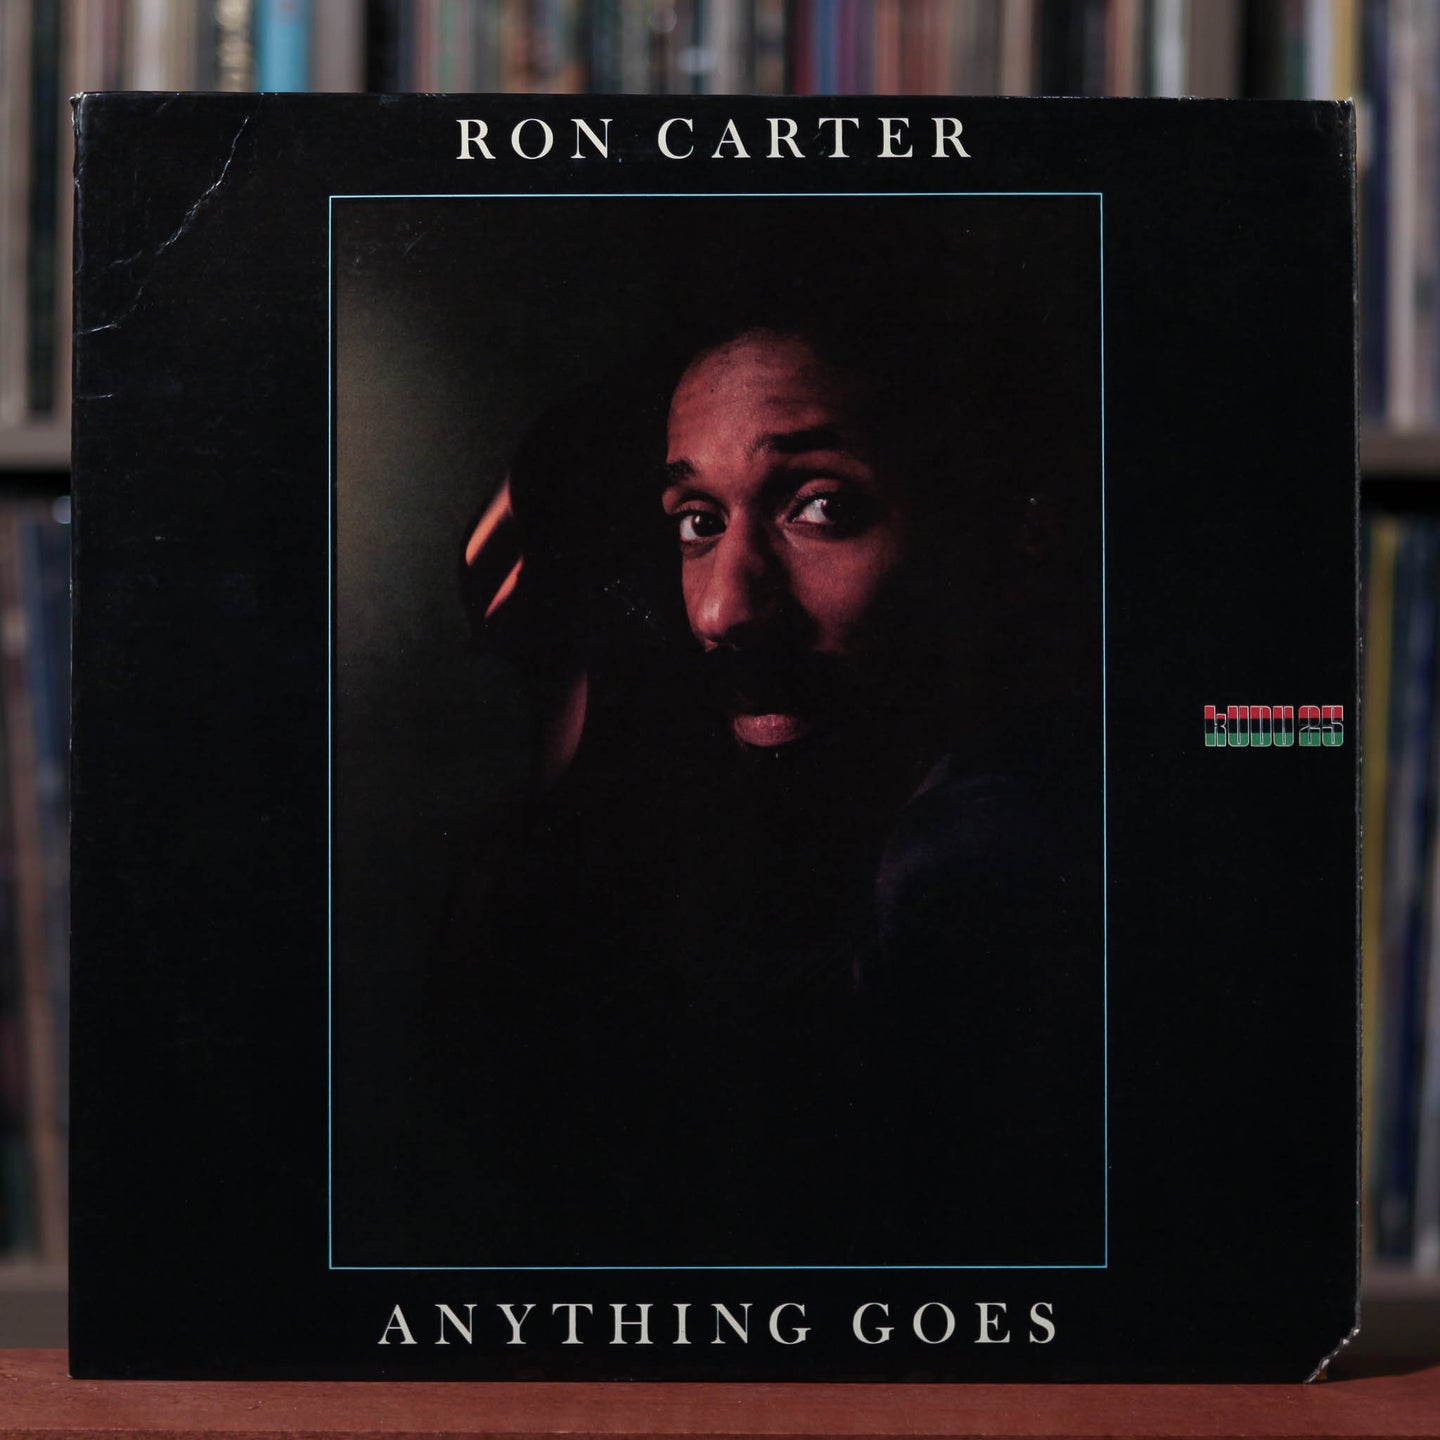 Ron Carter - Anything Goes - 1975 Kudu, VG/VG+